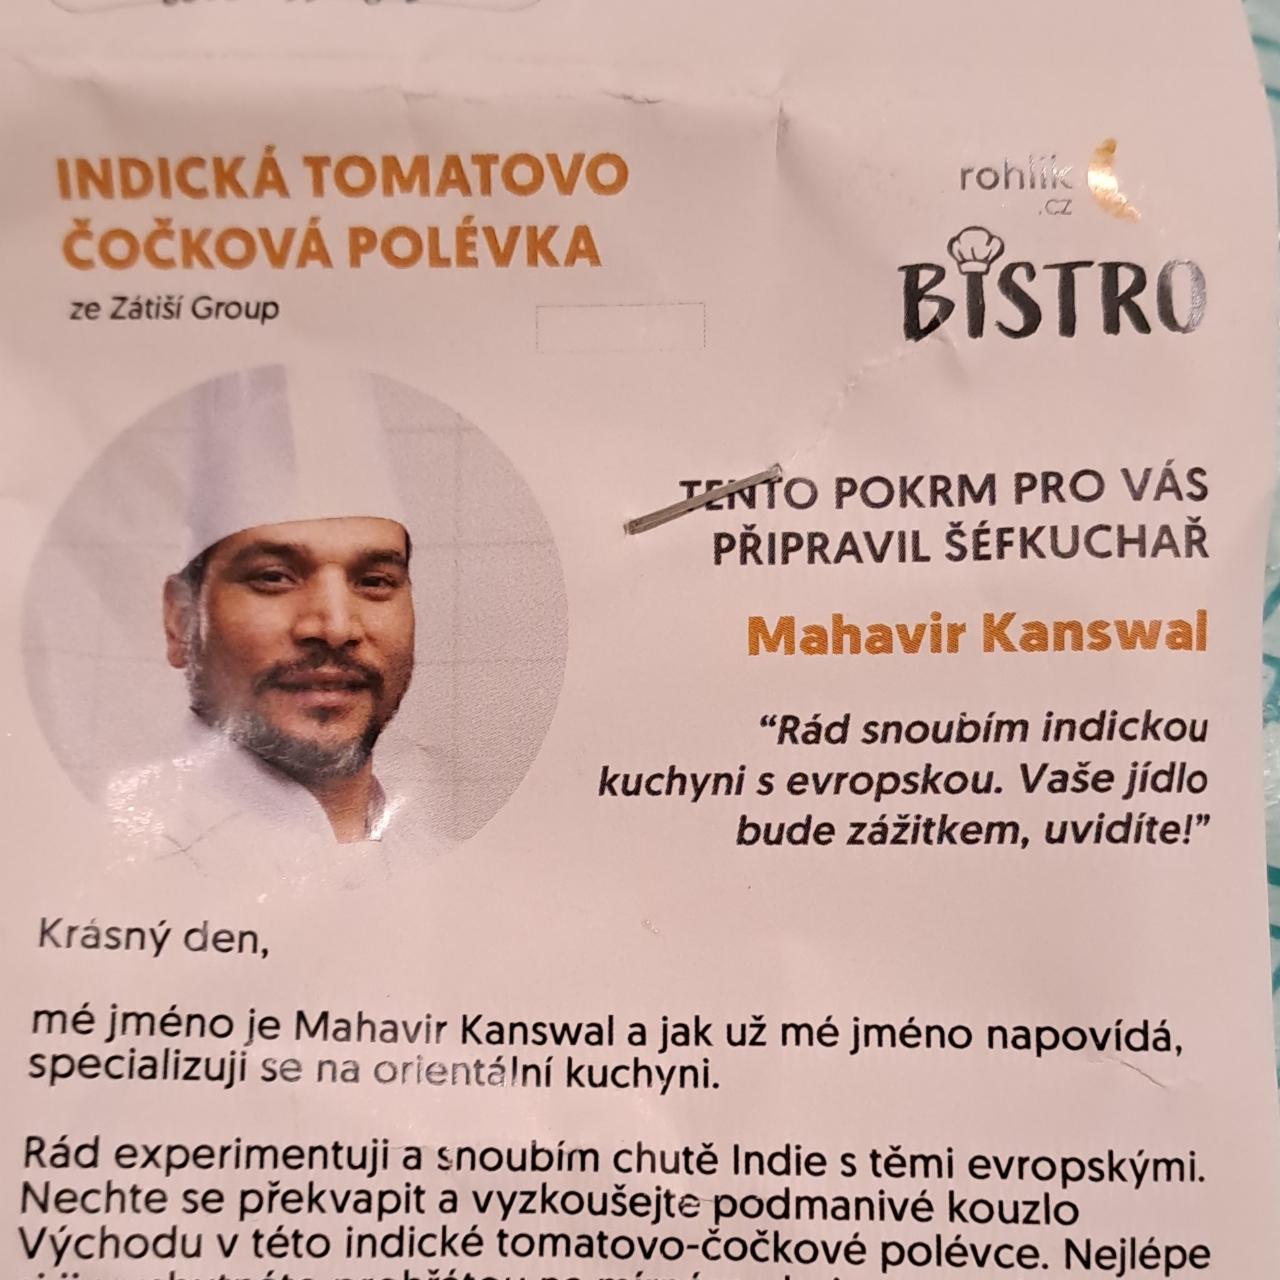 Fotografie - Indická tomatovo čočková polévka Bistro Rohlik.cz